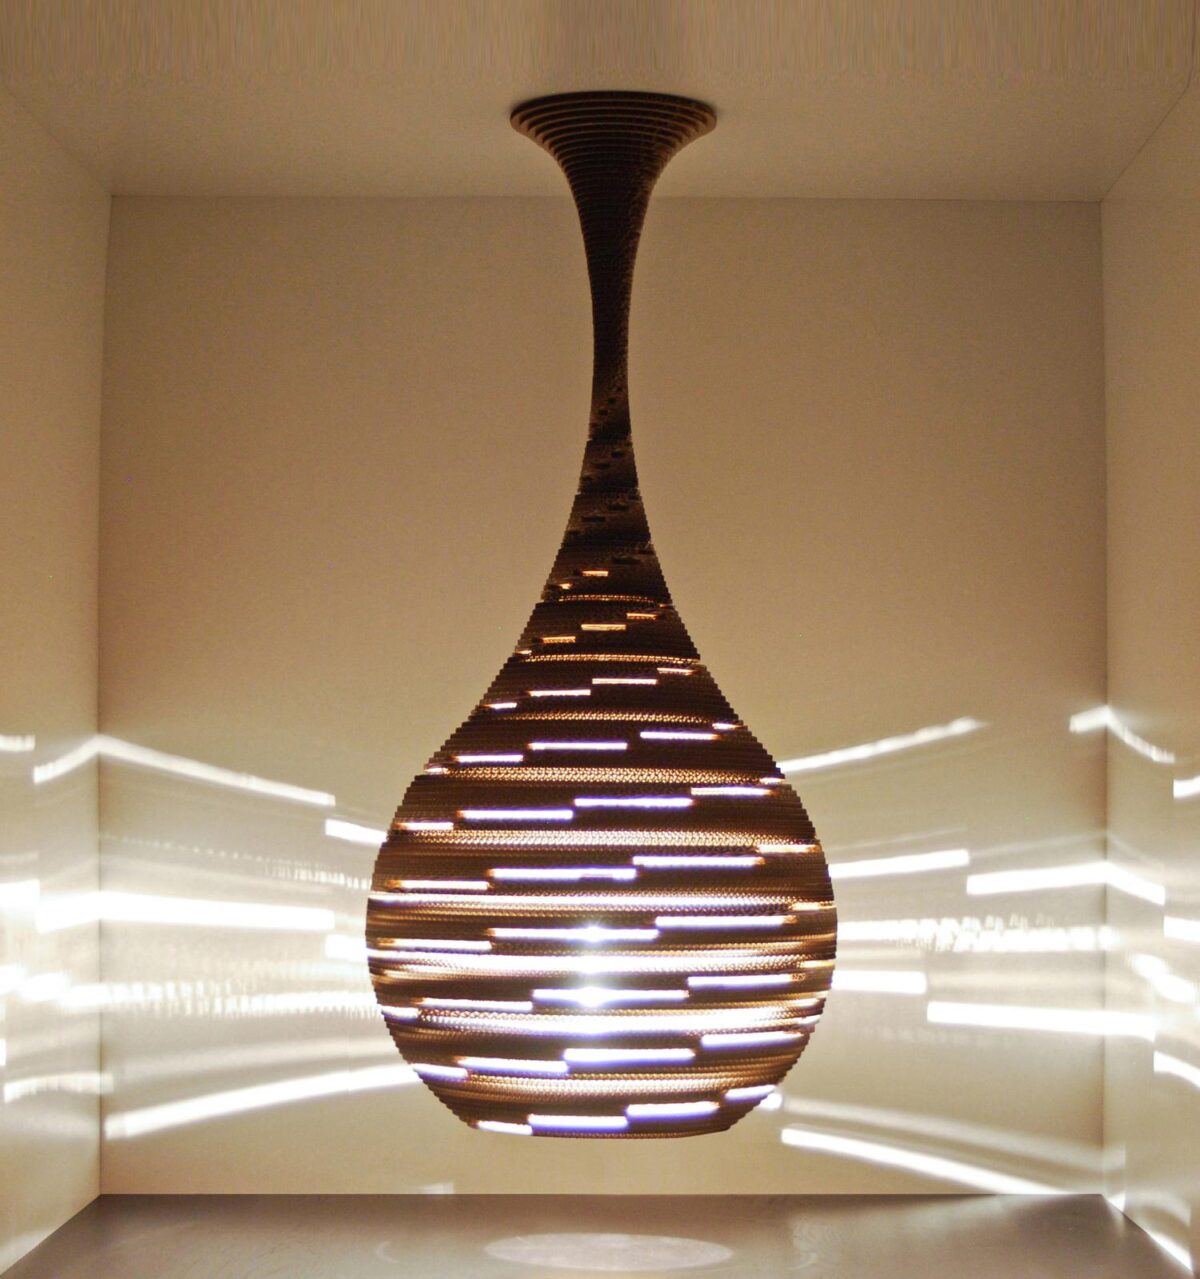 Catia Esteves artiste designer portugaise lampe